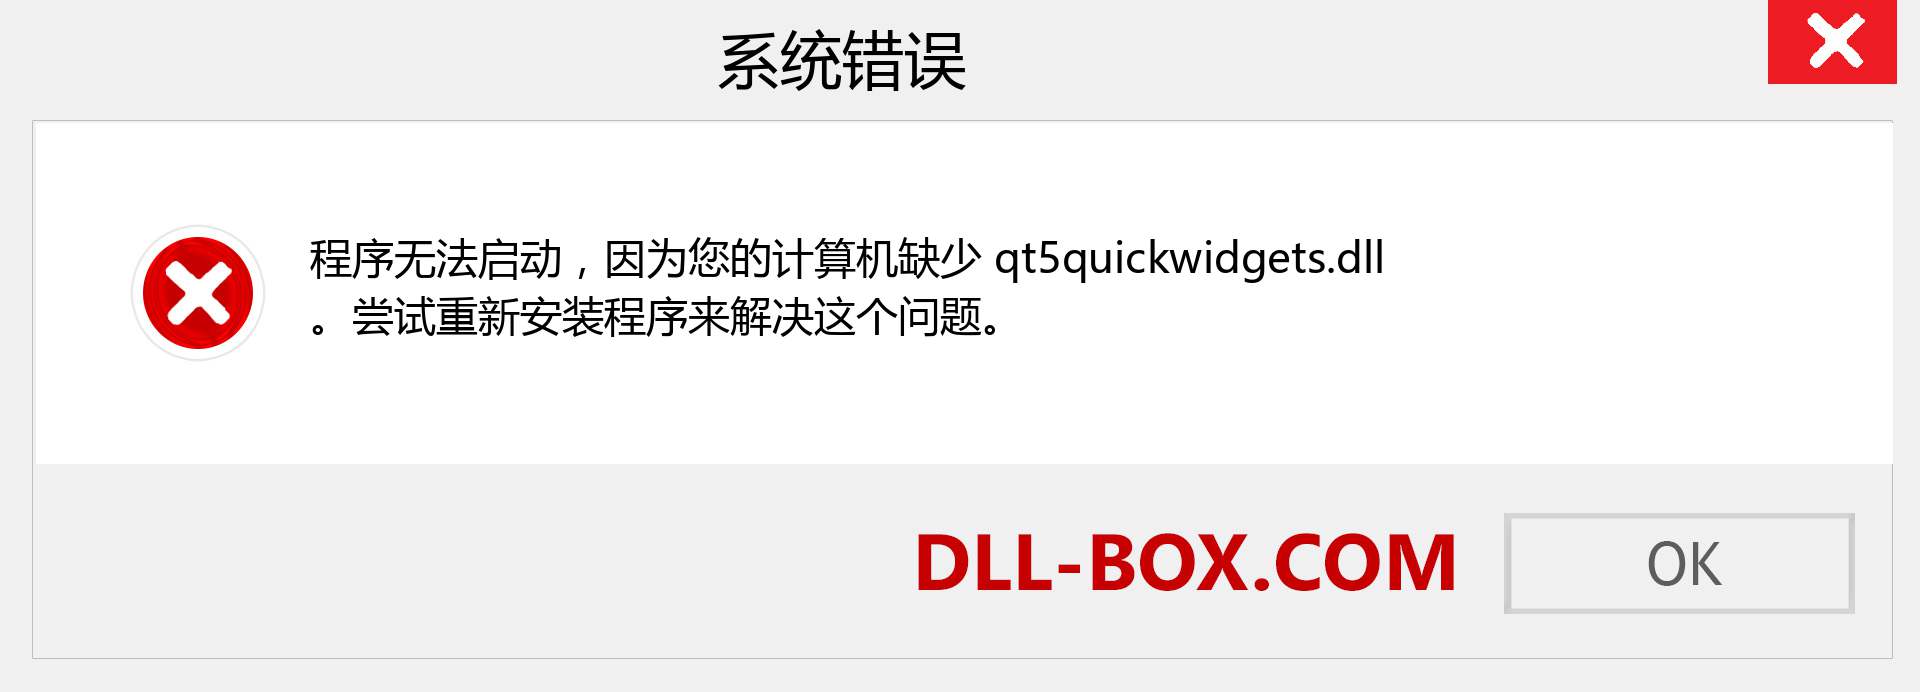 qt5quickwidgets.dll 文件丢失？。 适用于 Windows 7、8、10 的下载 - 修复 Windows、照片、图像上的 qt5quickwidgets dll 丢失错误